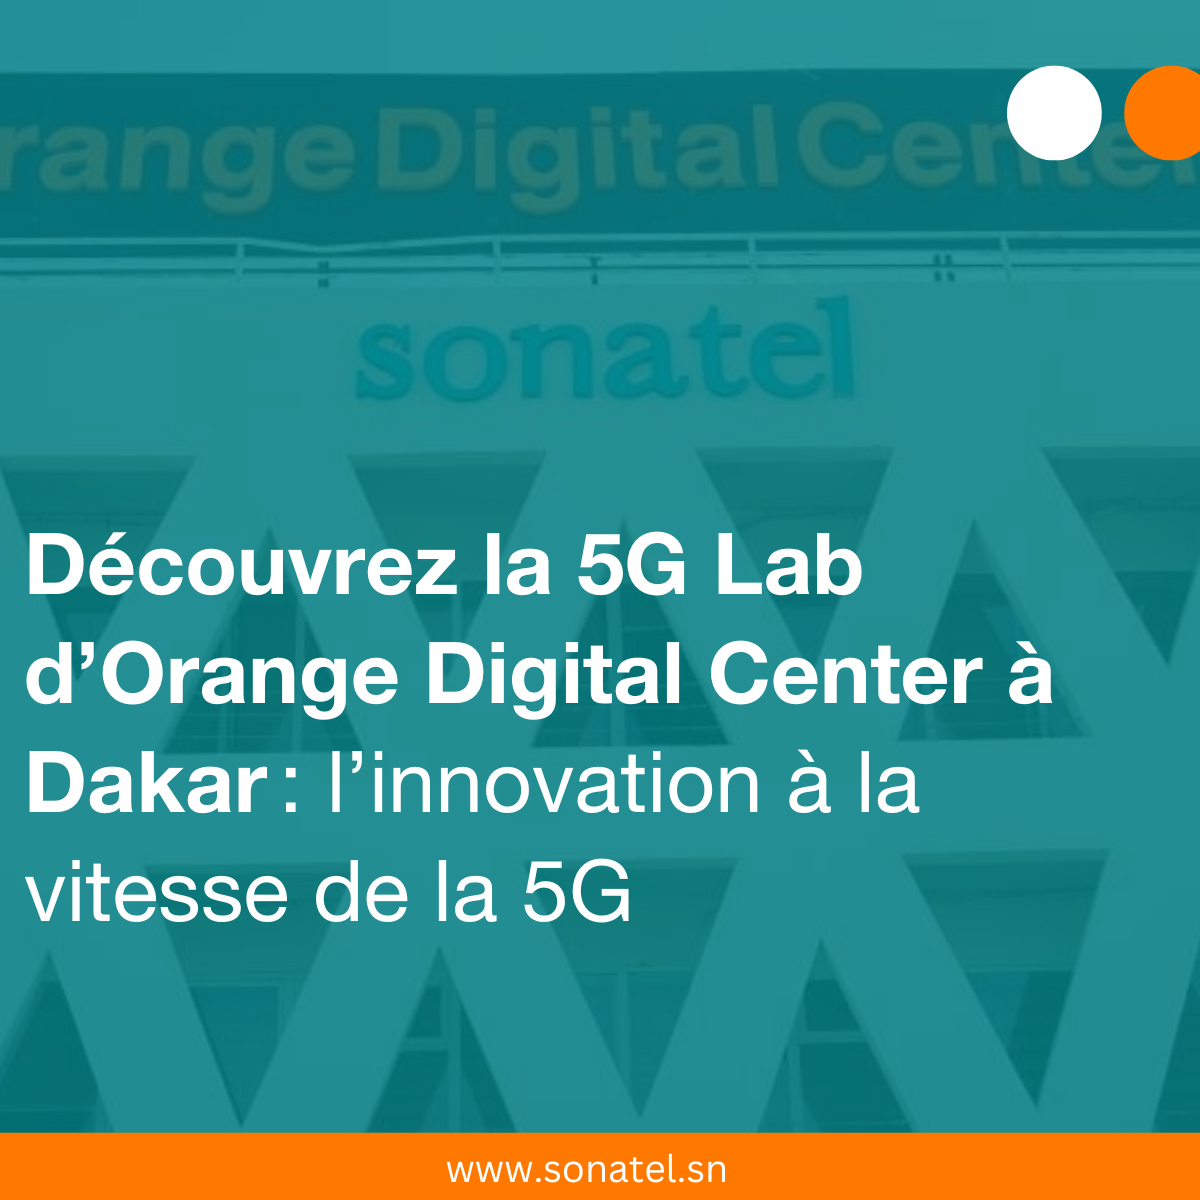 La 5G Lab d’Orange Digital Center à Dakar : l’innovation à la vitesse de la 5G